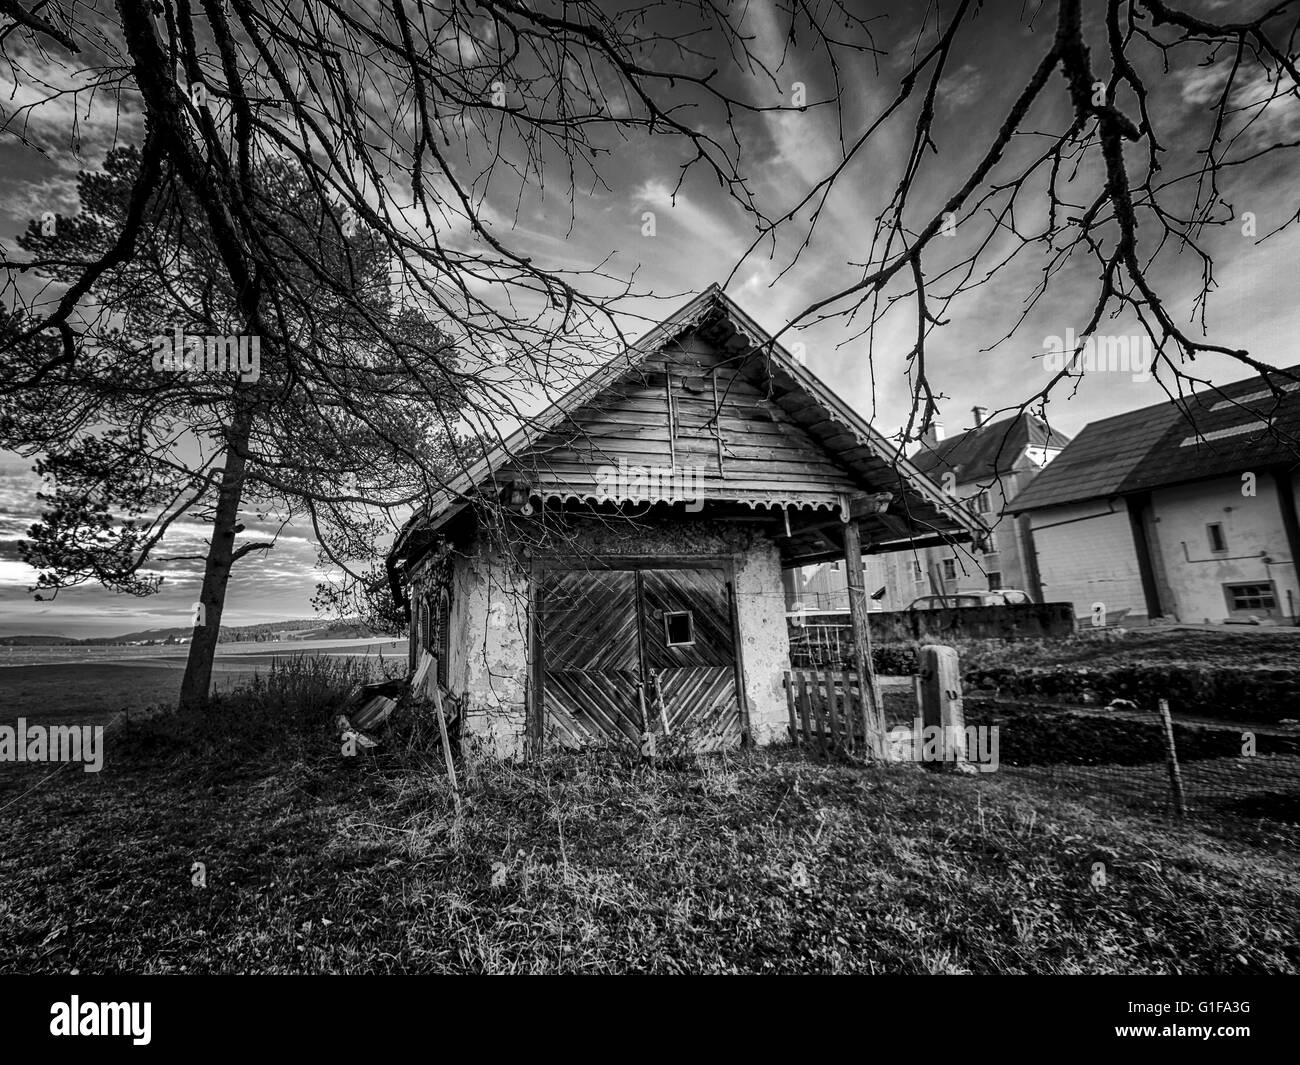 Petite maison entourée d'arbres dans la campagne en noir et blanc Banque D'Images